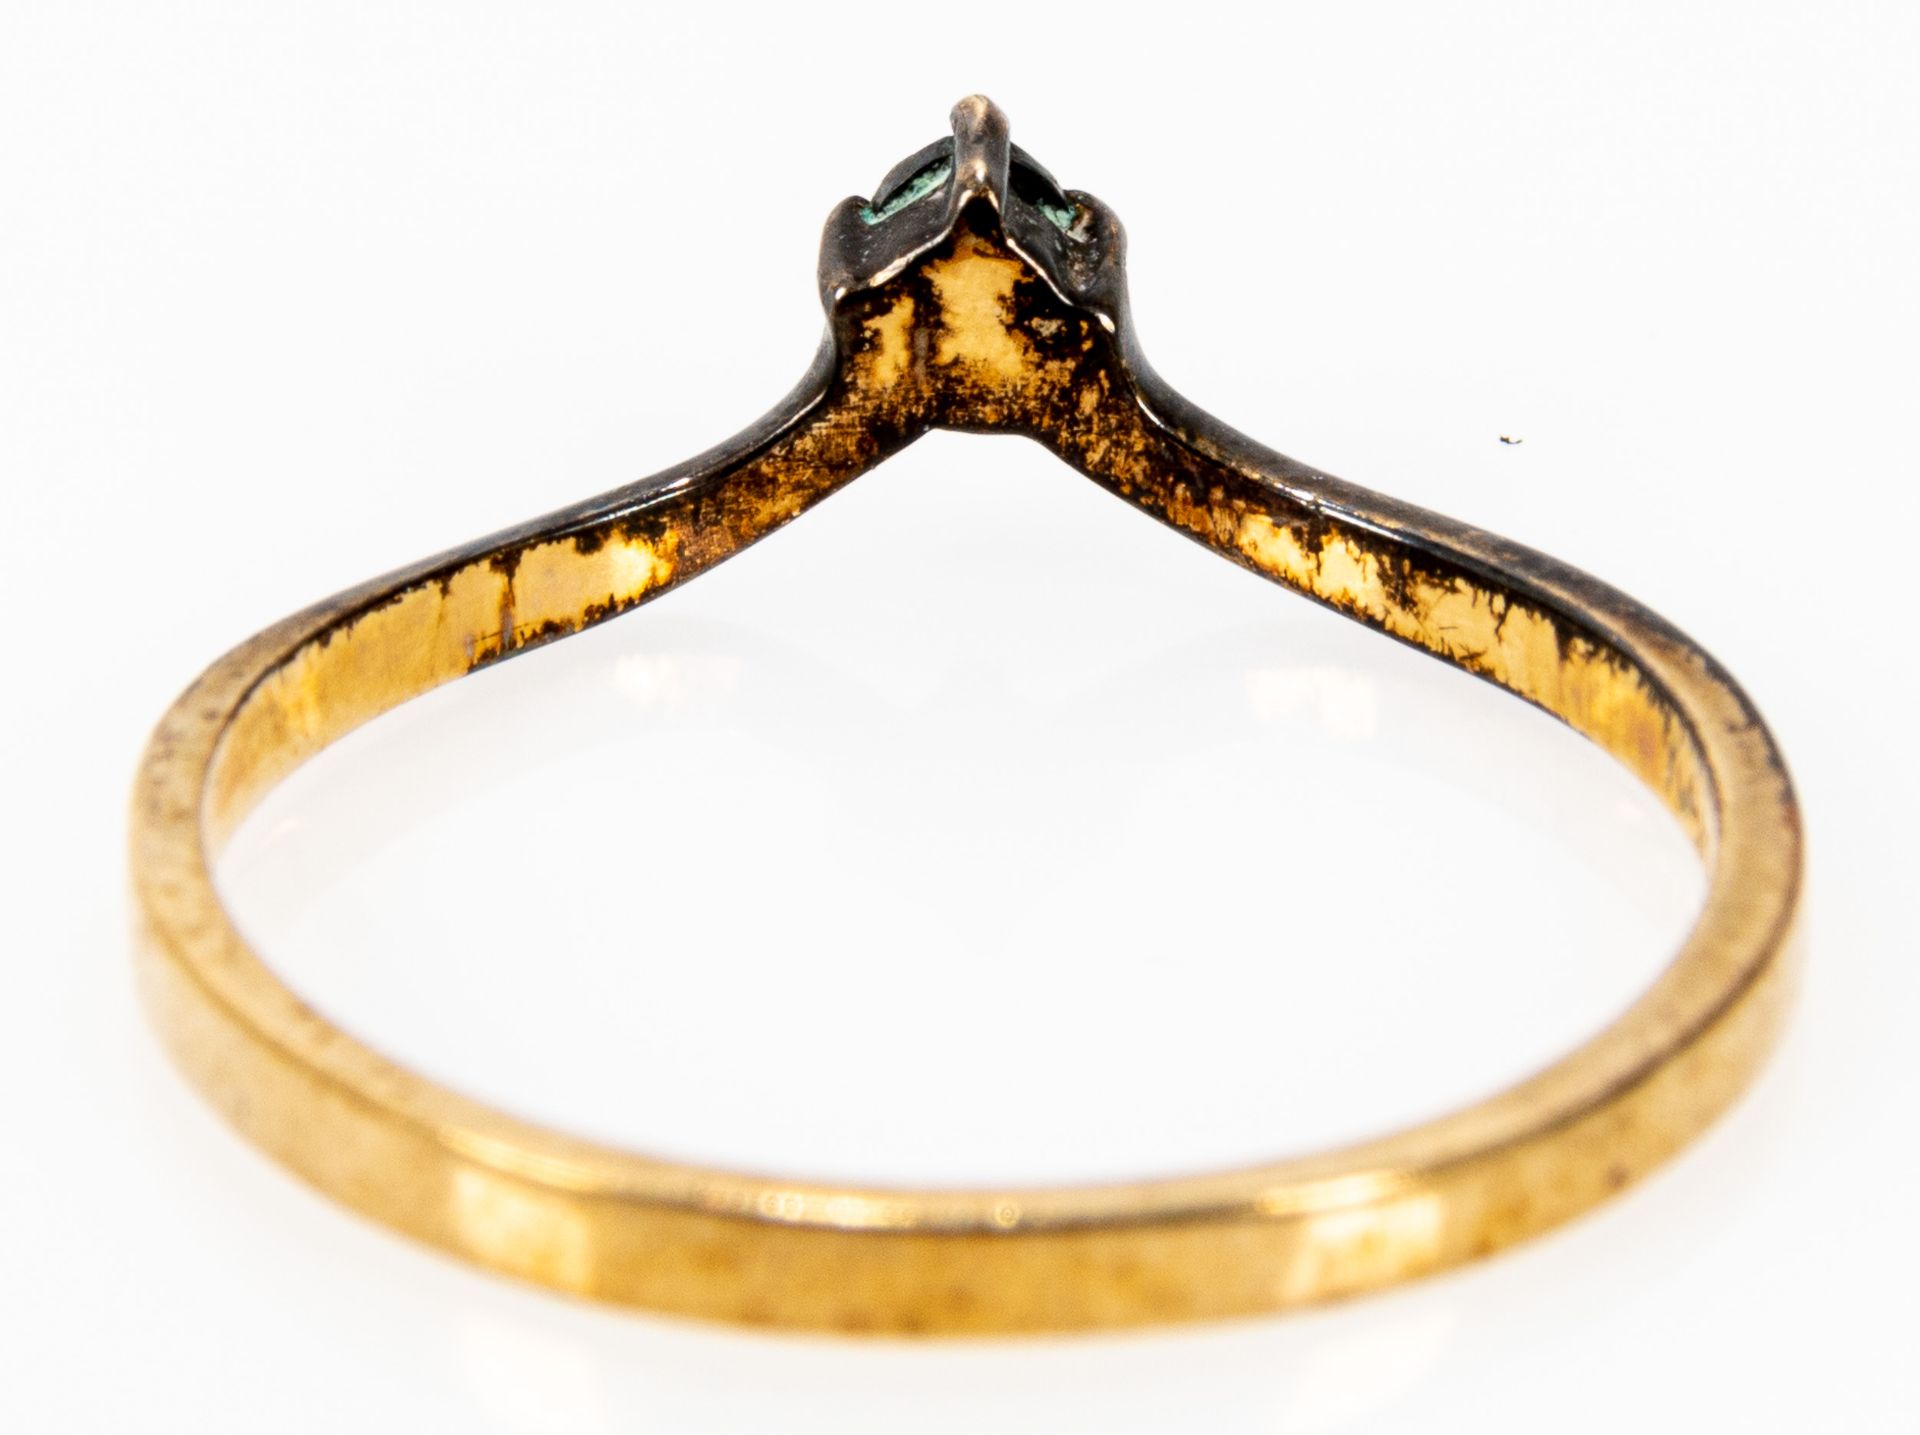 Zarter 375er Gelbgold Ring in nicht alltäglicher Formgebung, mit kleinen Diamanten besetzt; Ringinn - Image 4 of 5